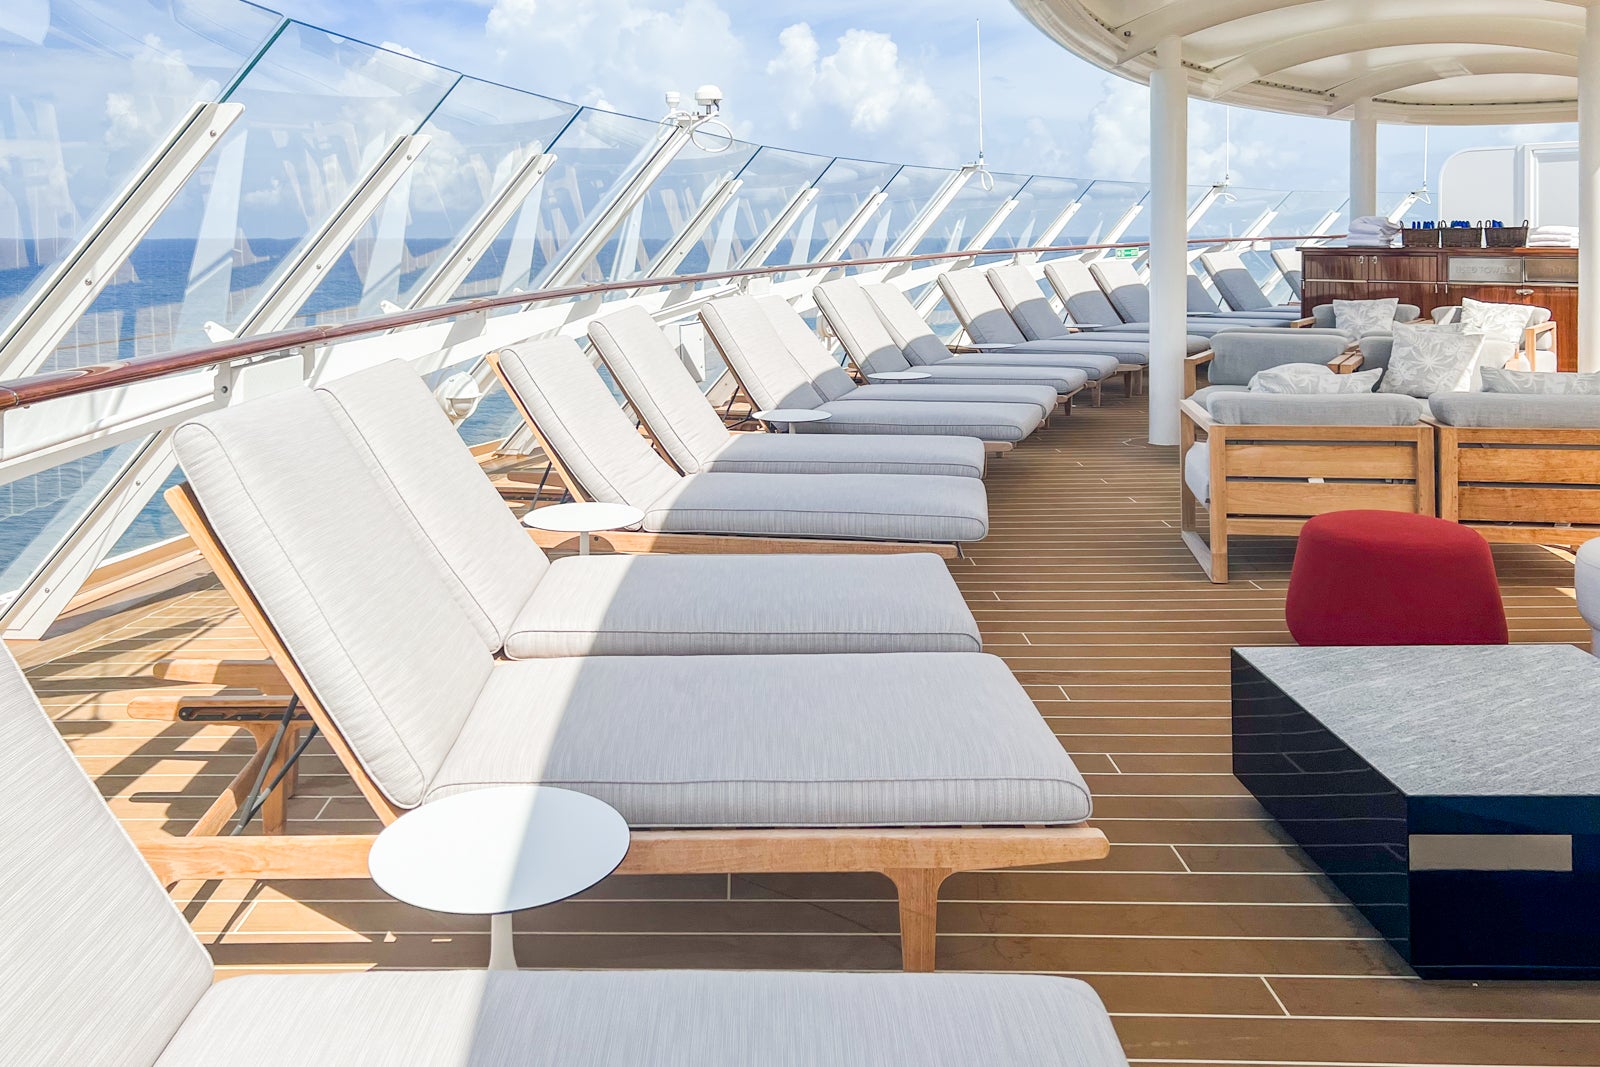 benefits of disney cruise concierge